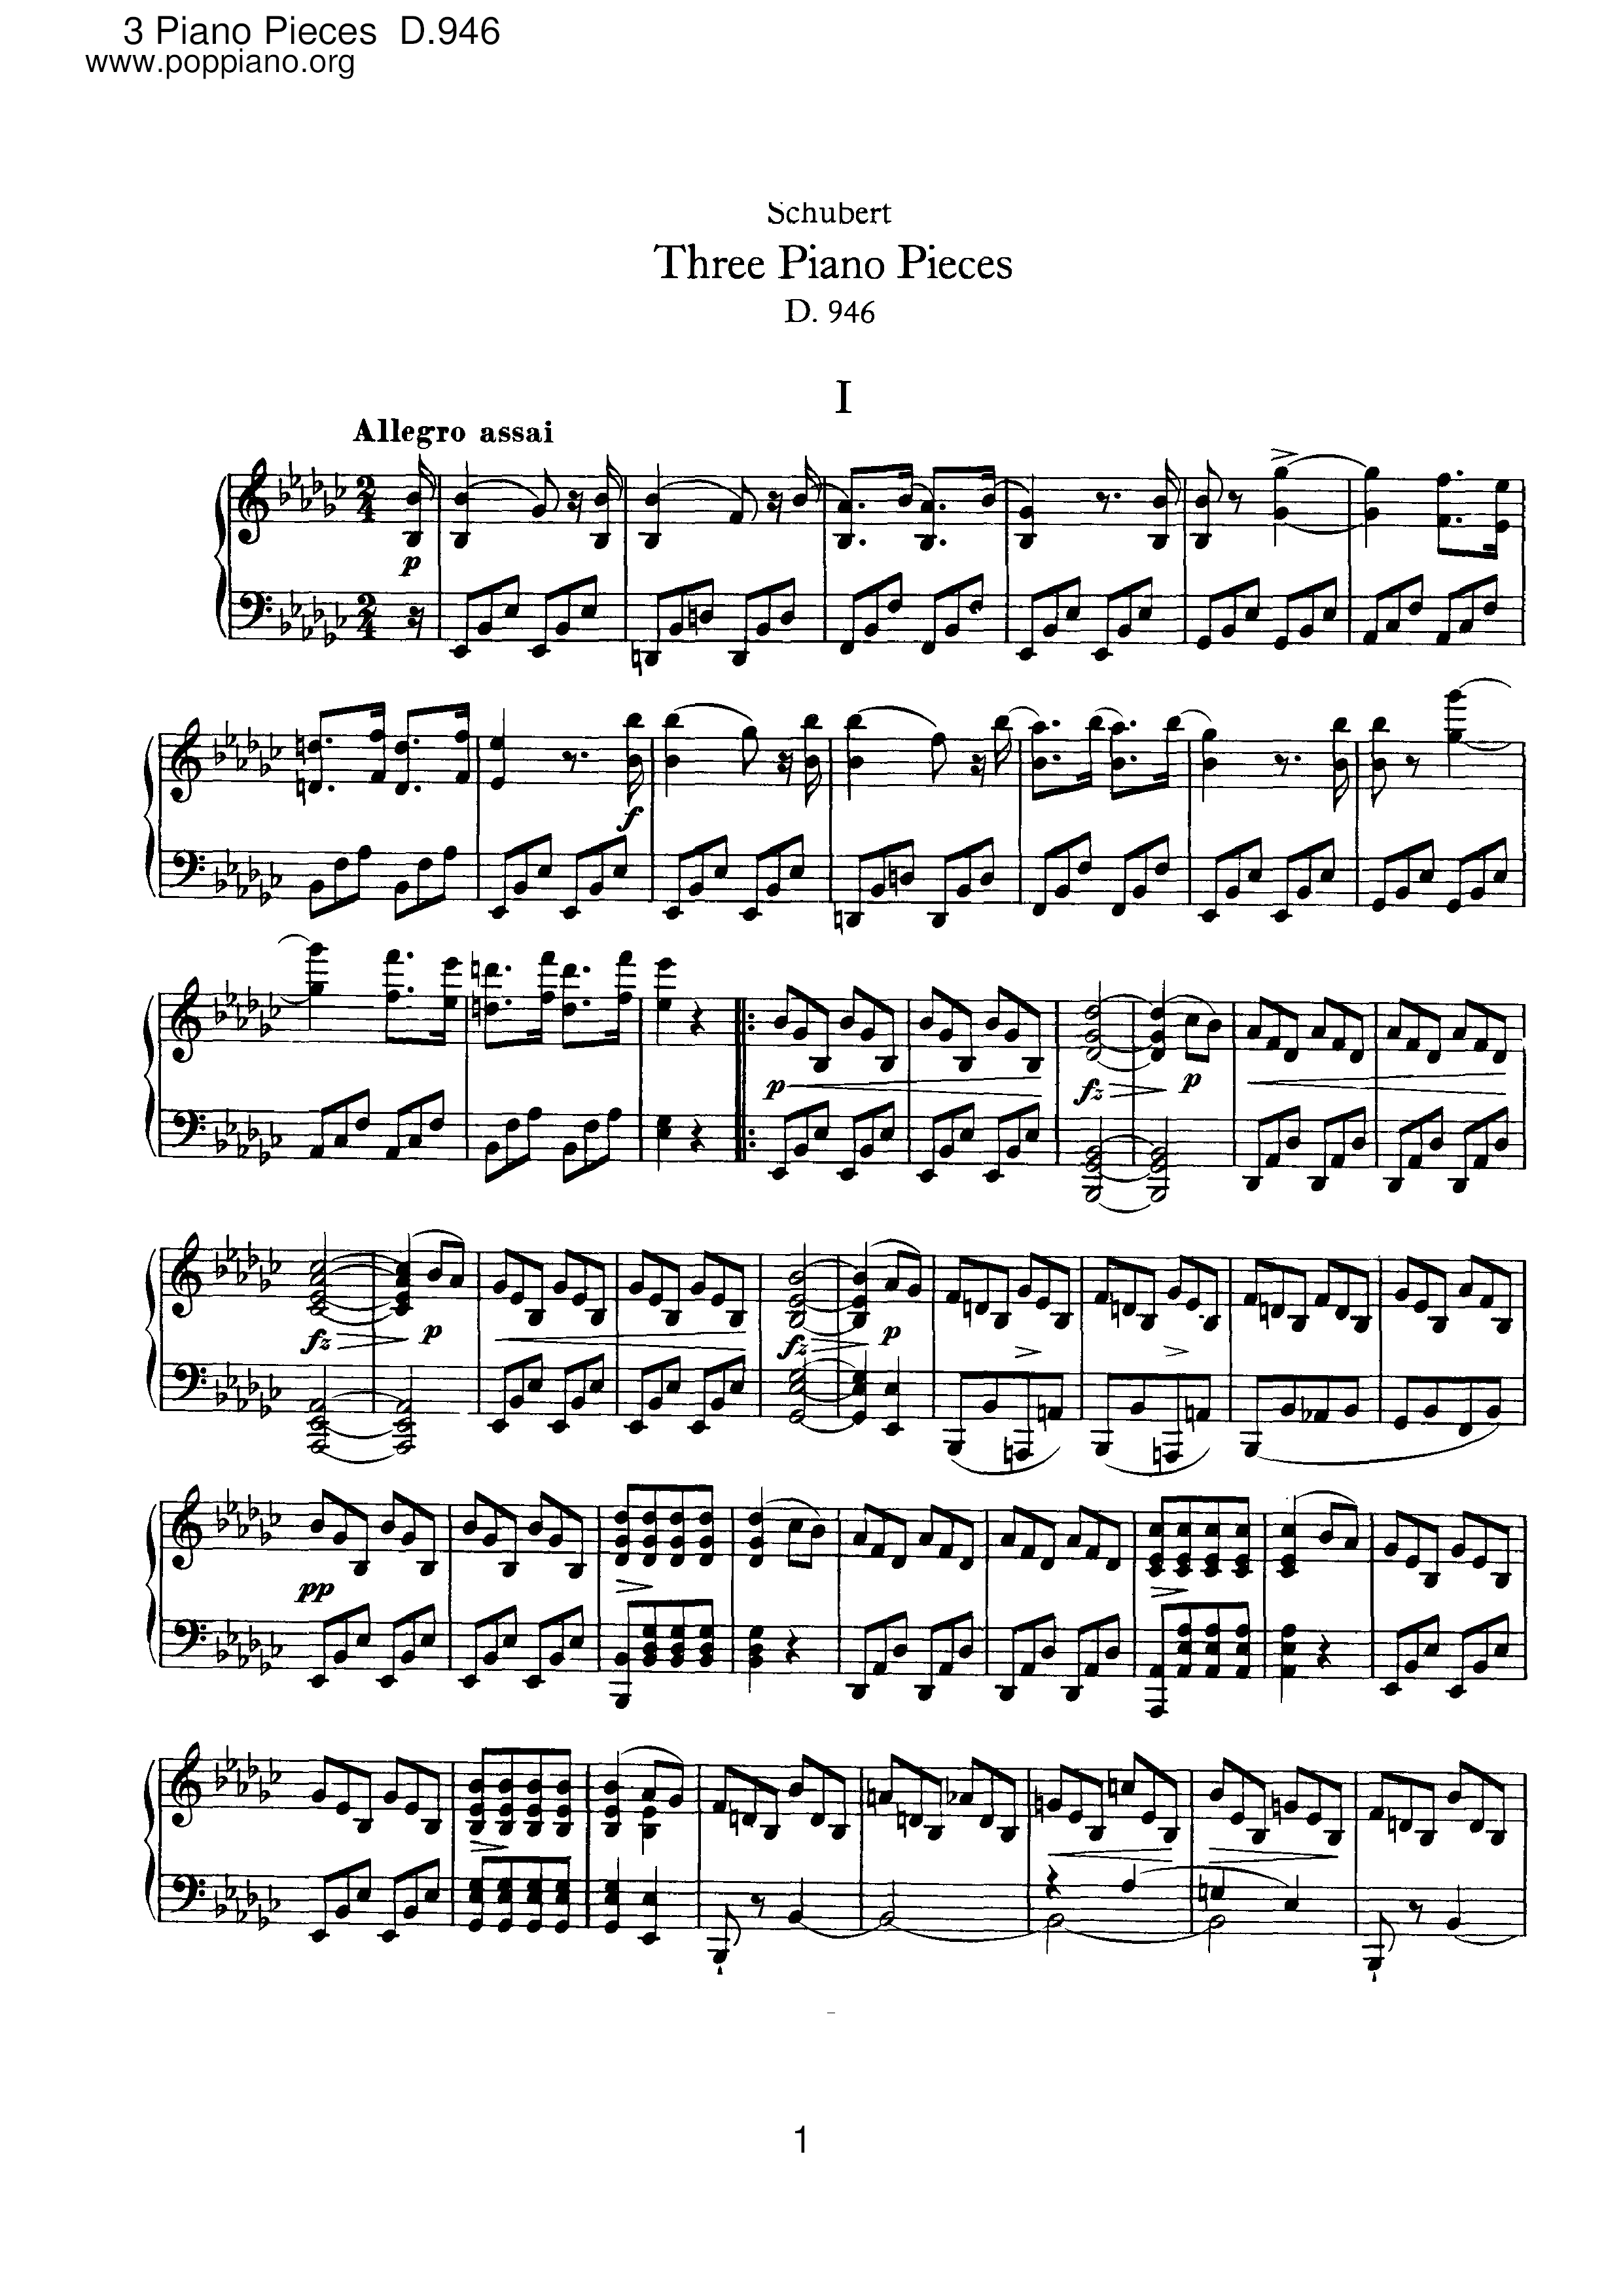 3 Piano Pieces, D.946ピアノ譜